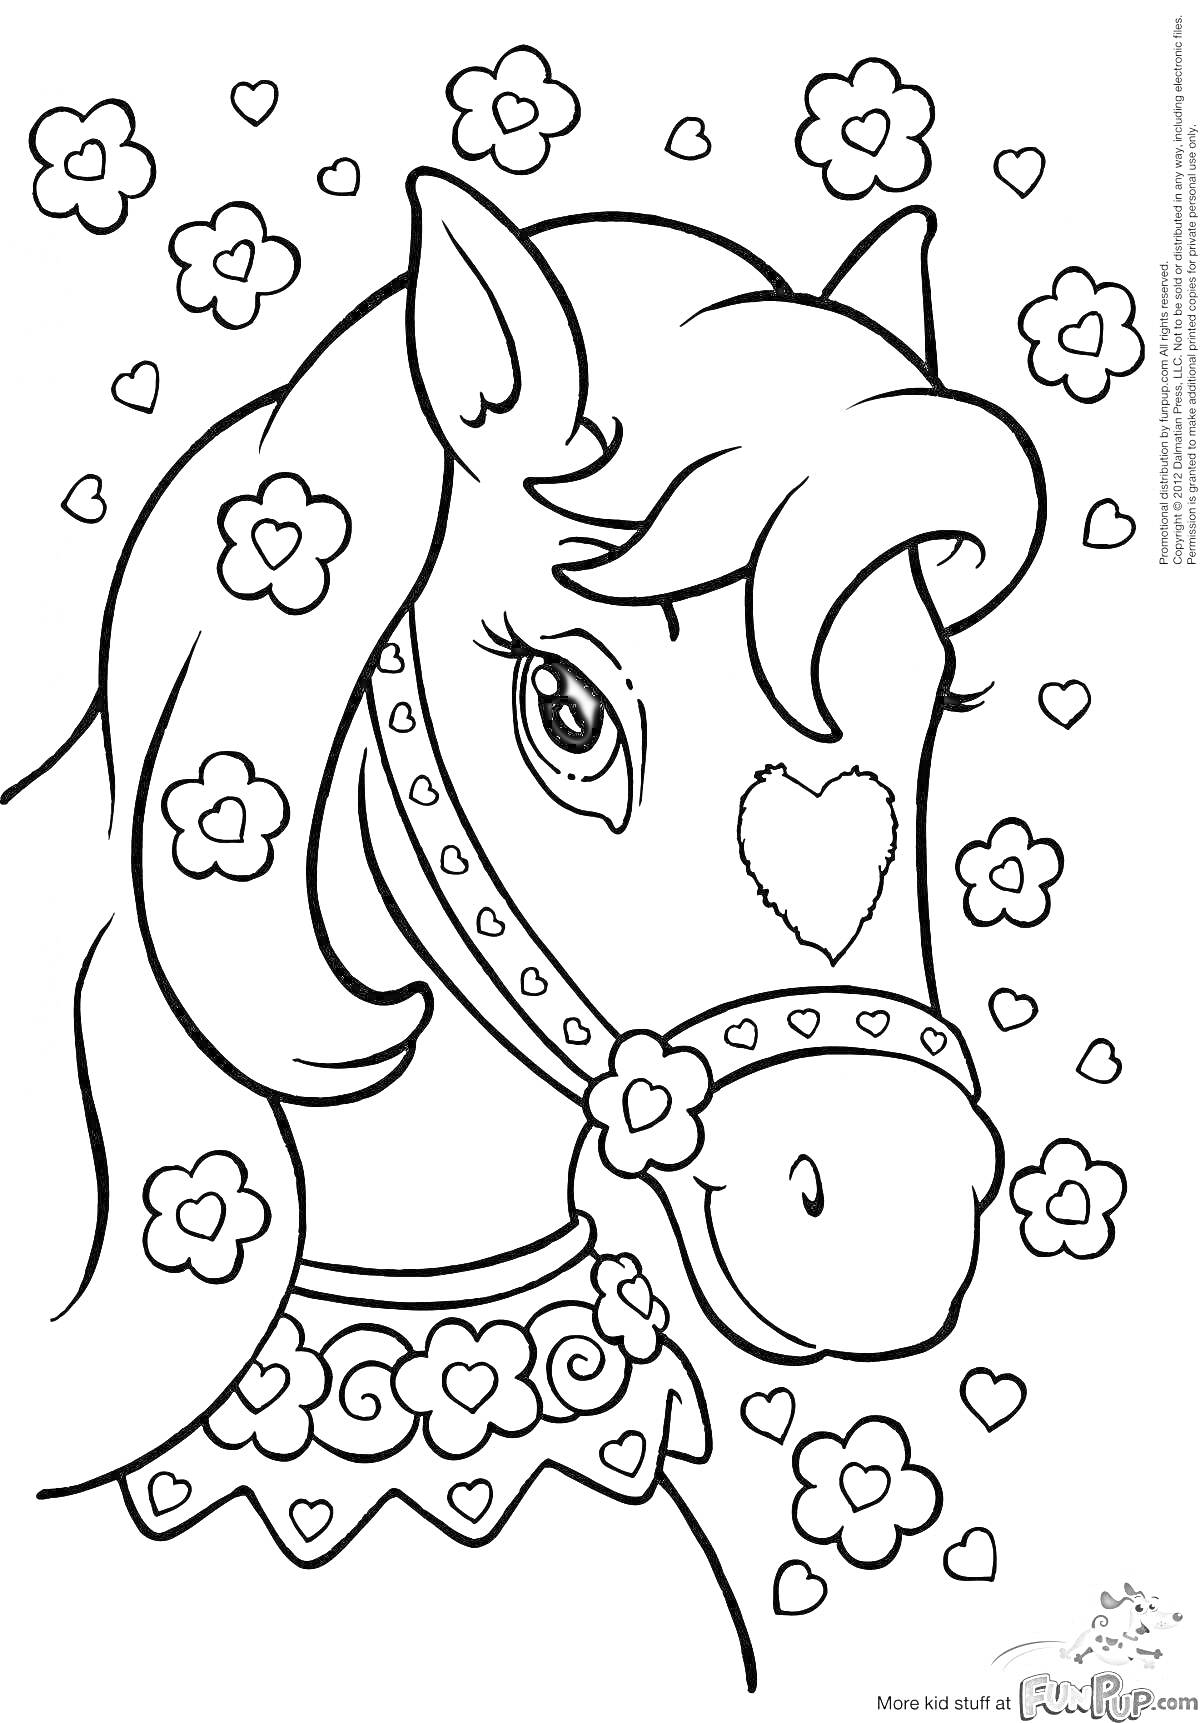 Раскраска Лошадка с сердечком на лбу в окружении цветочков